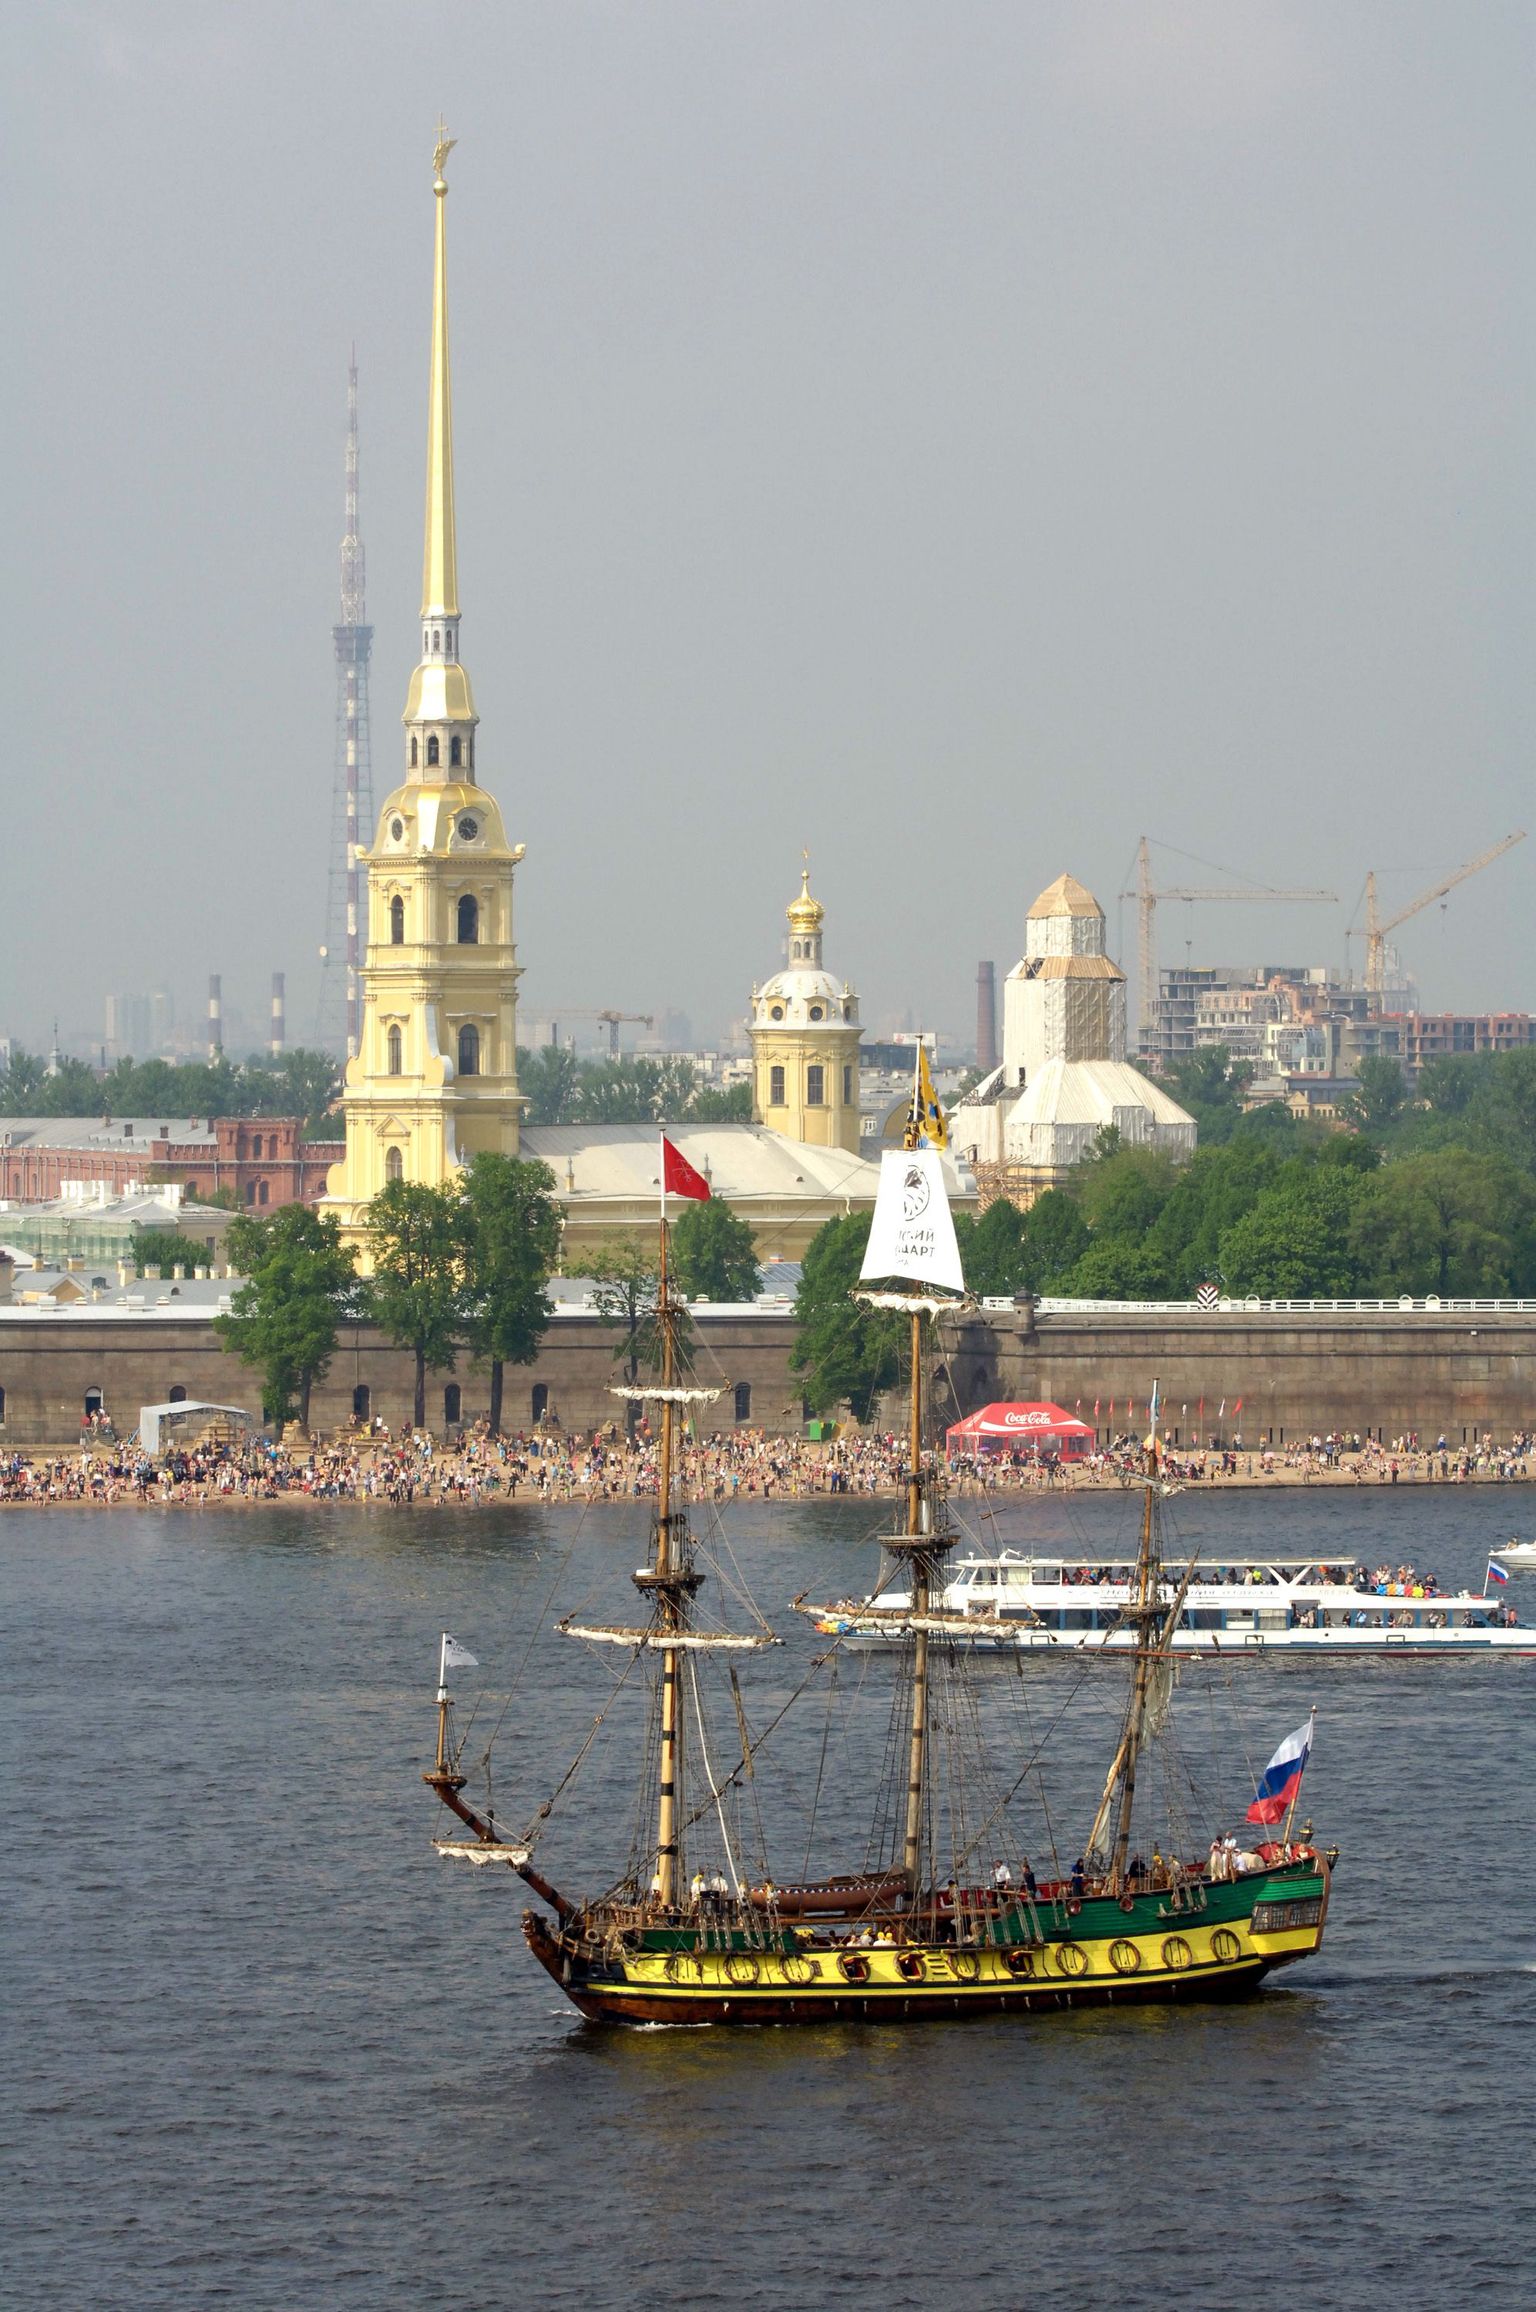 Vaade Peterburis asuvale Peeter-Pauli kindlusele üle Neeva jõe.